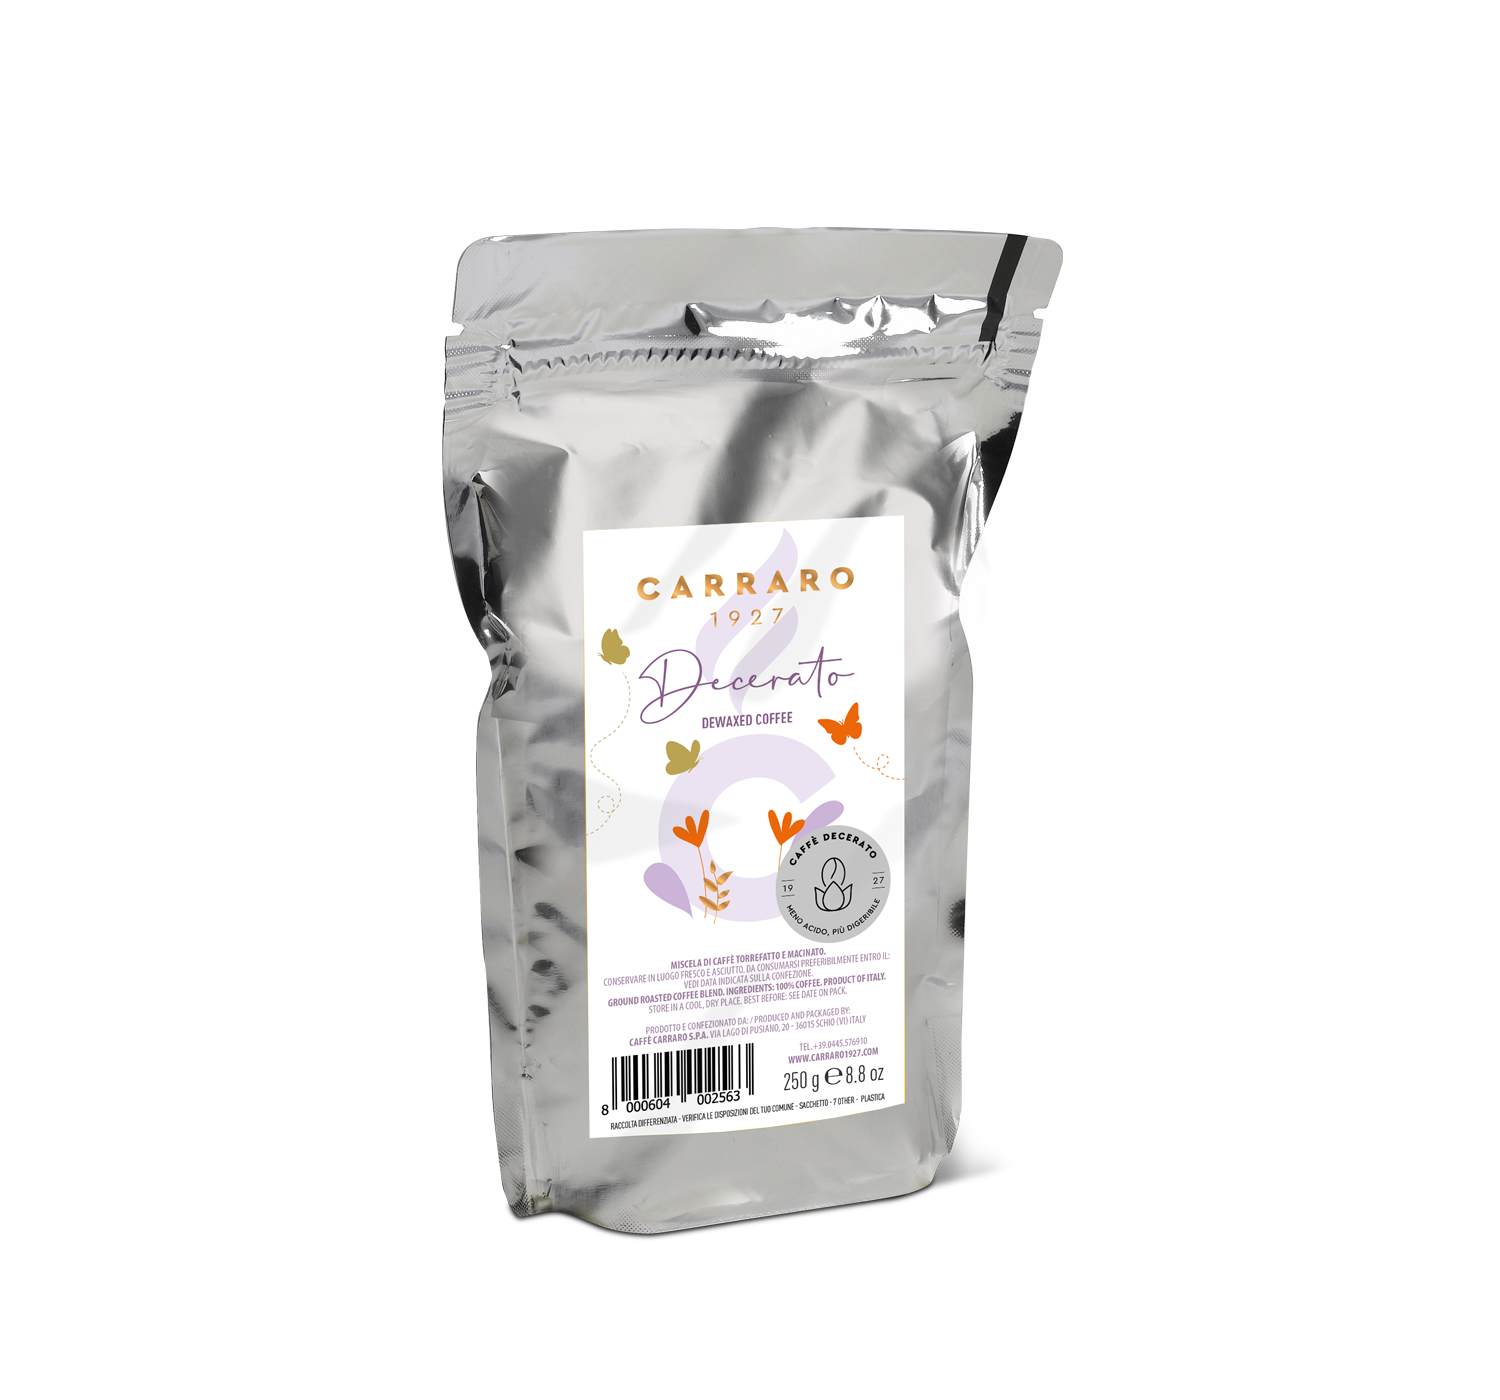 Retail - Decerato – dewaxed ground coffee standpack 250 g - Shop online Caffè Carraro